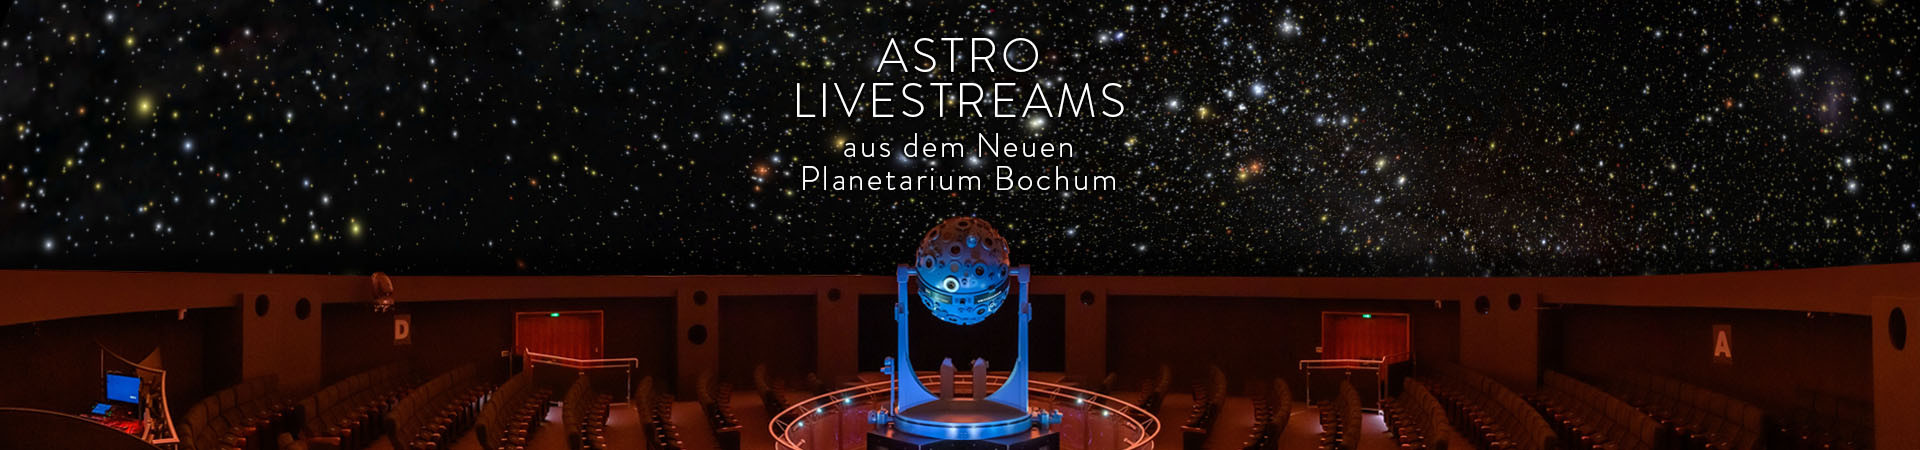 Astro Livestreams Header